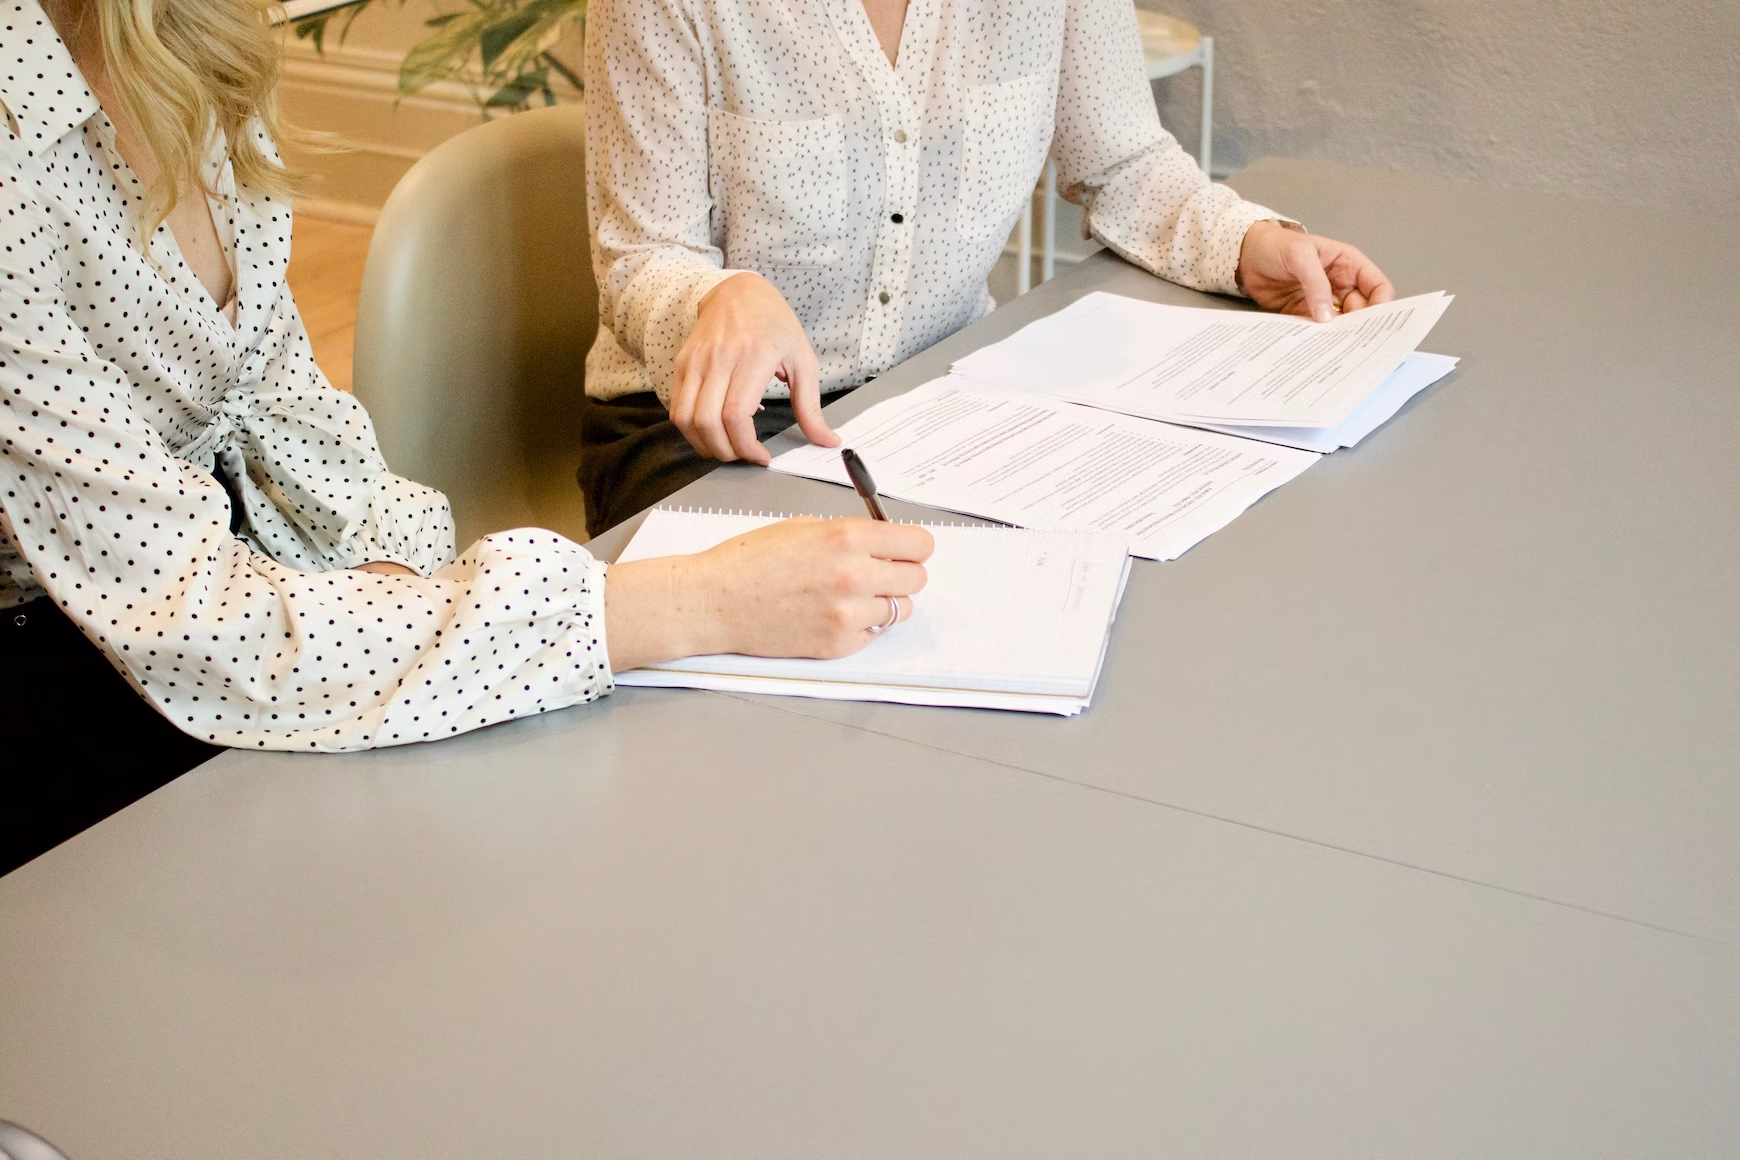 Une femme avec une chemise à pois tenant un stylo et écrivant sur un carnet et une autre femme tenant des documents